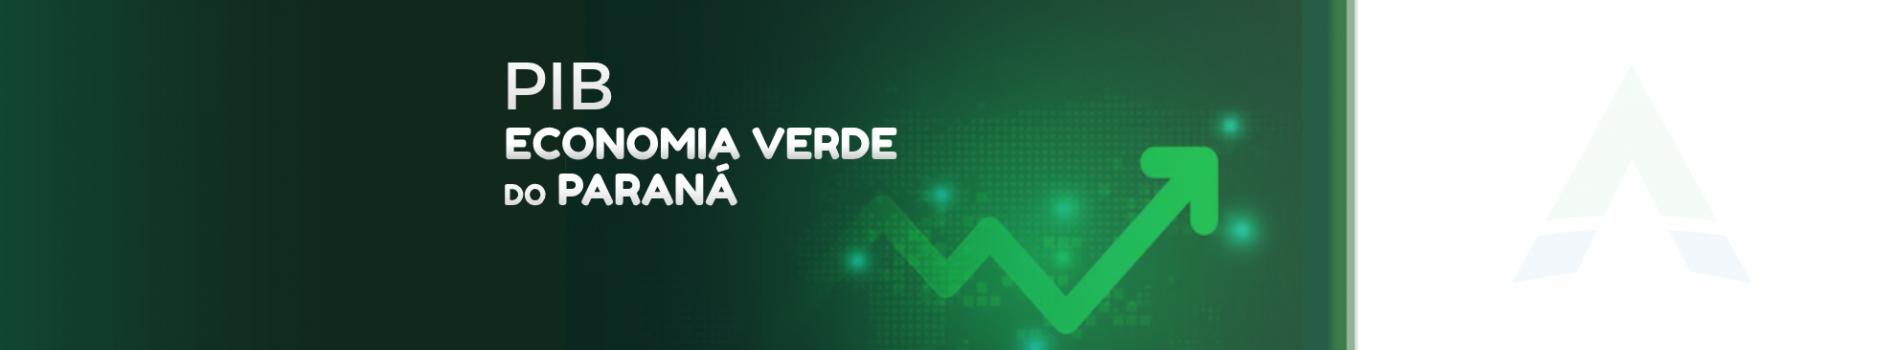 Banner_PIB_Economia_Verde